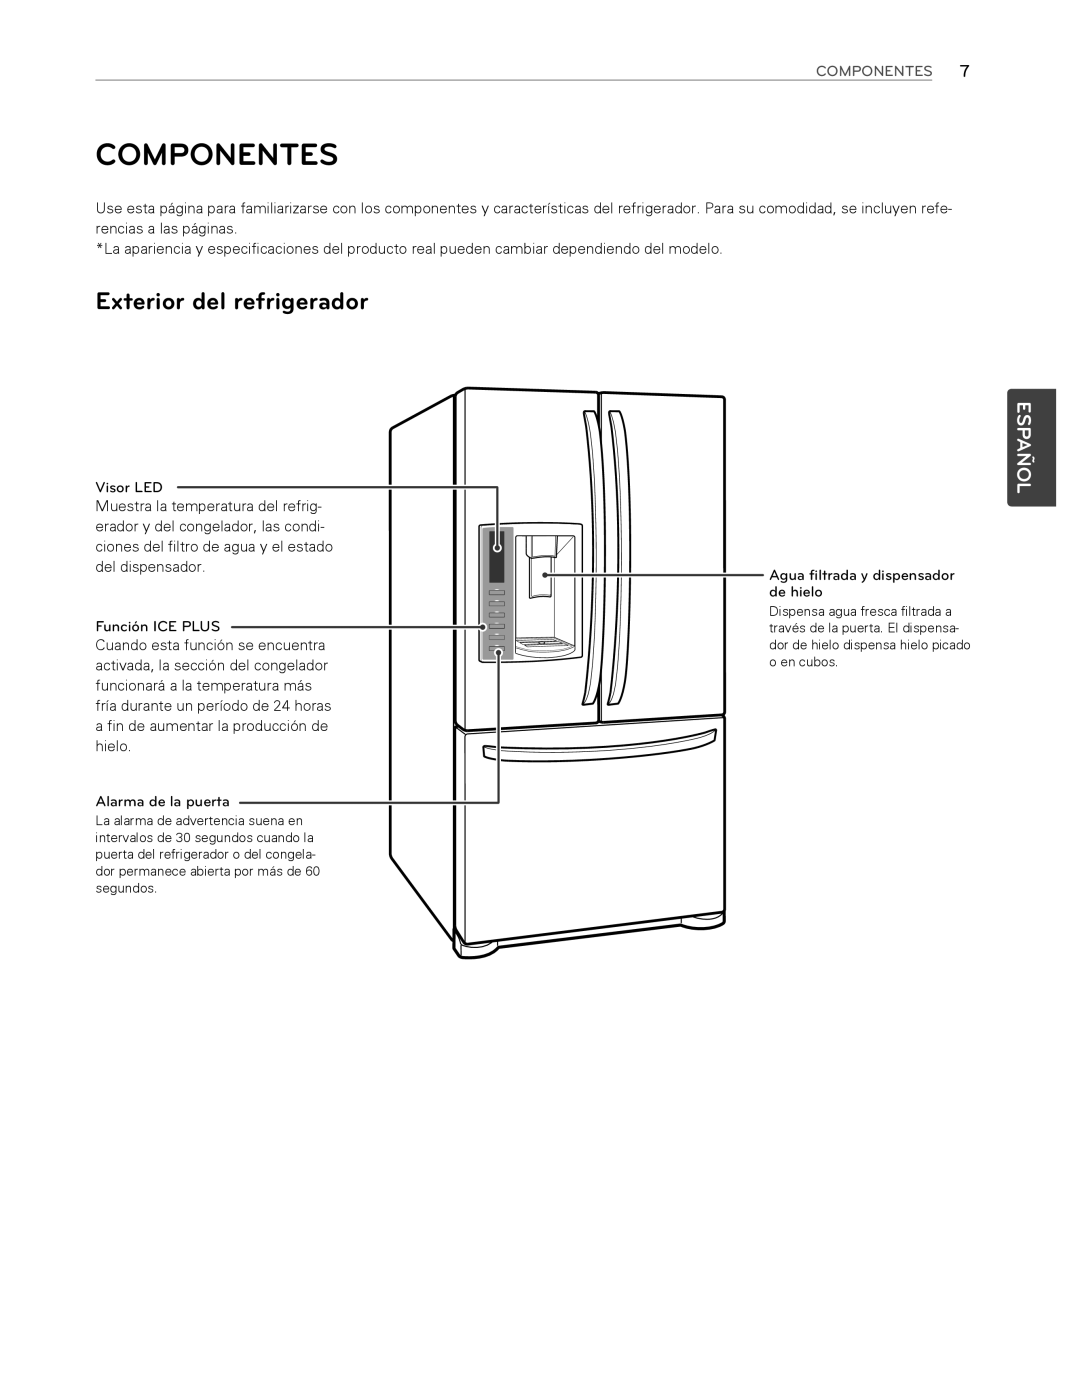 LG Electronics LFX25974ST, LFX25974SB owner manual Componentes, Exterior del refrigerador, Español 